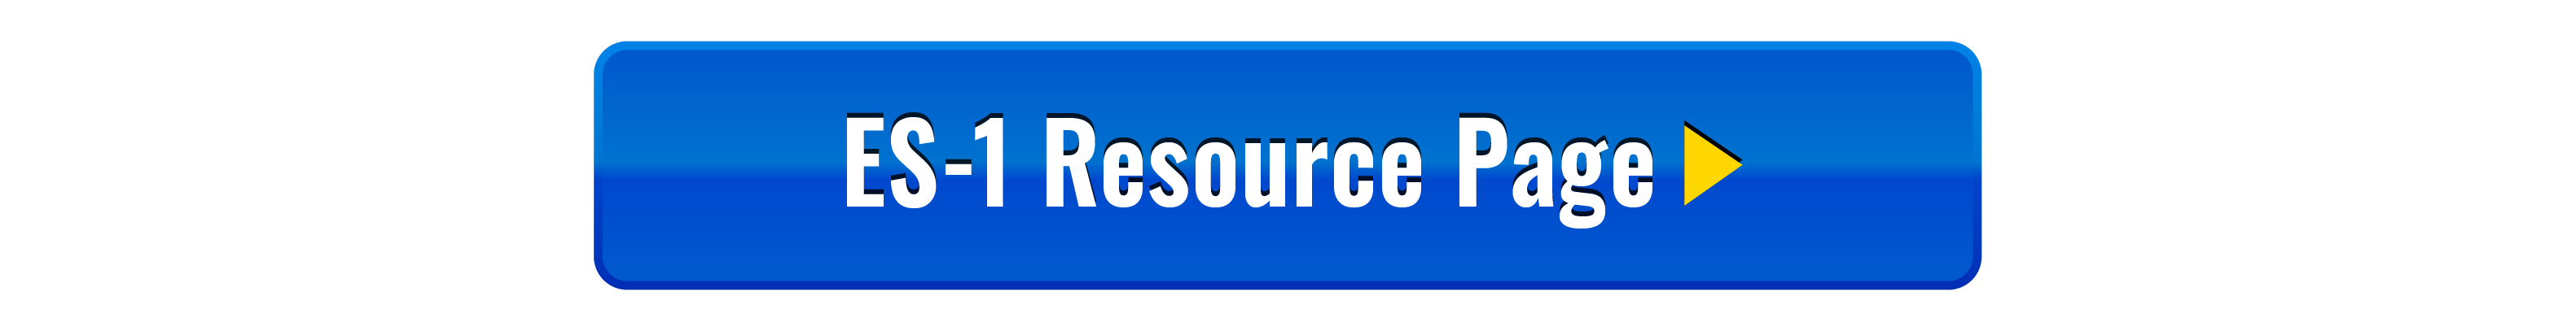 ME-ES-1-Resource-Page.png